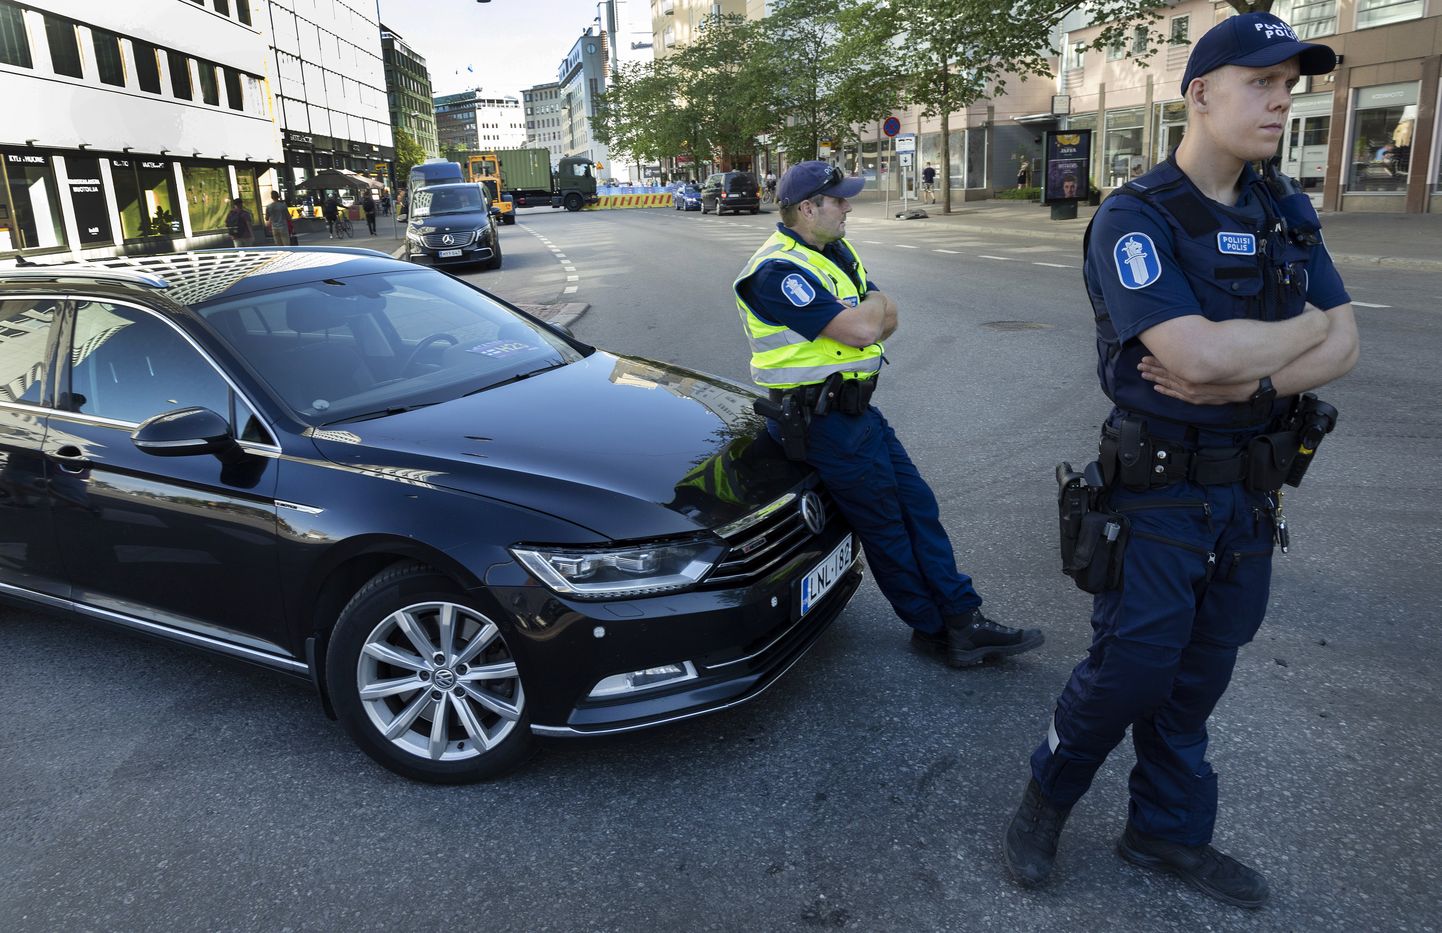 Soome politseinikud. Foto pole seotud kõnealuse juhtumiga